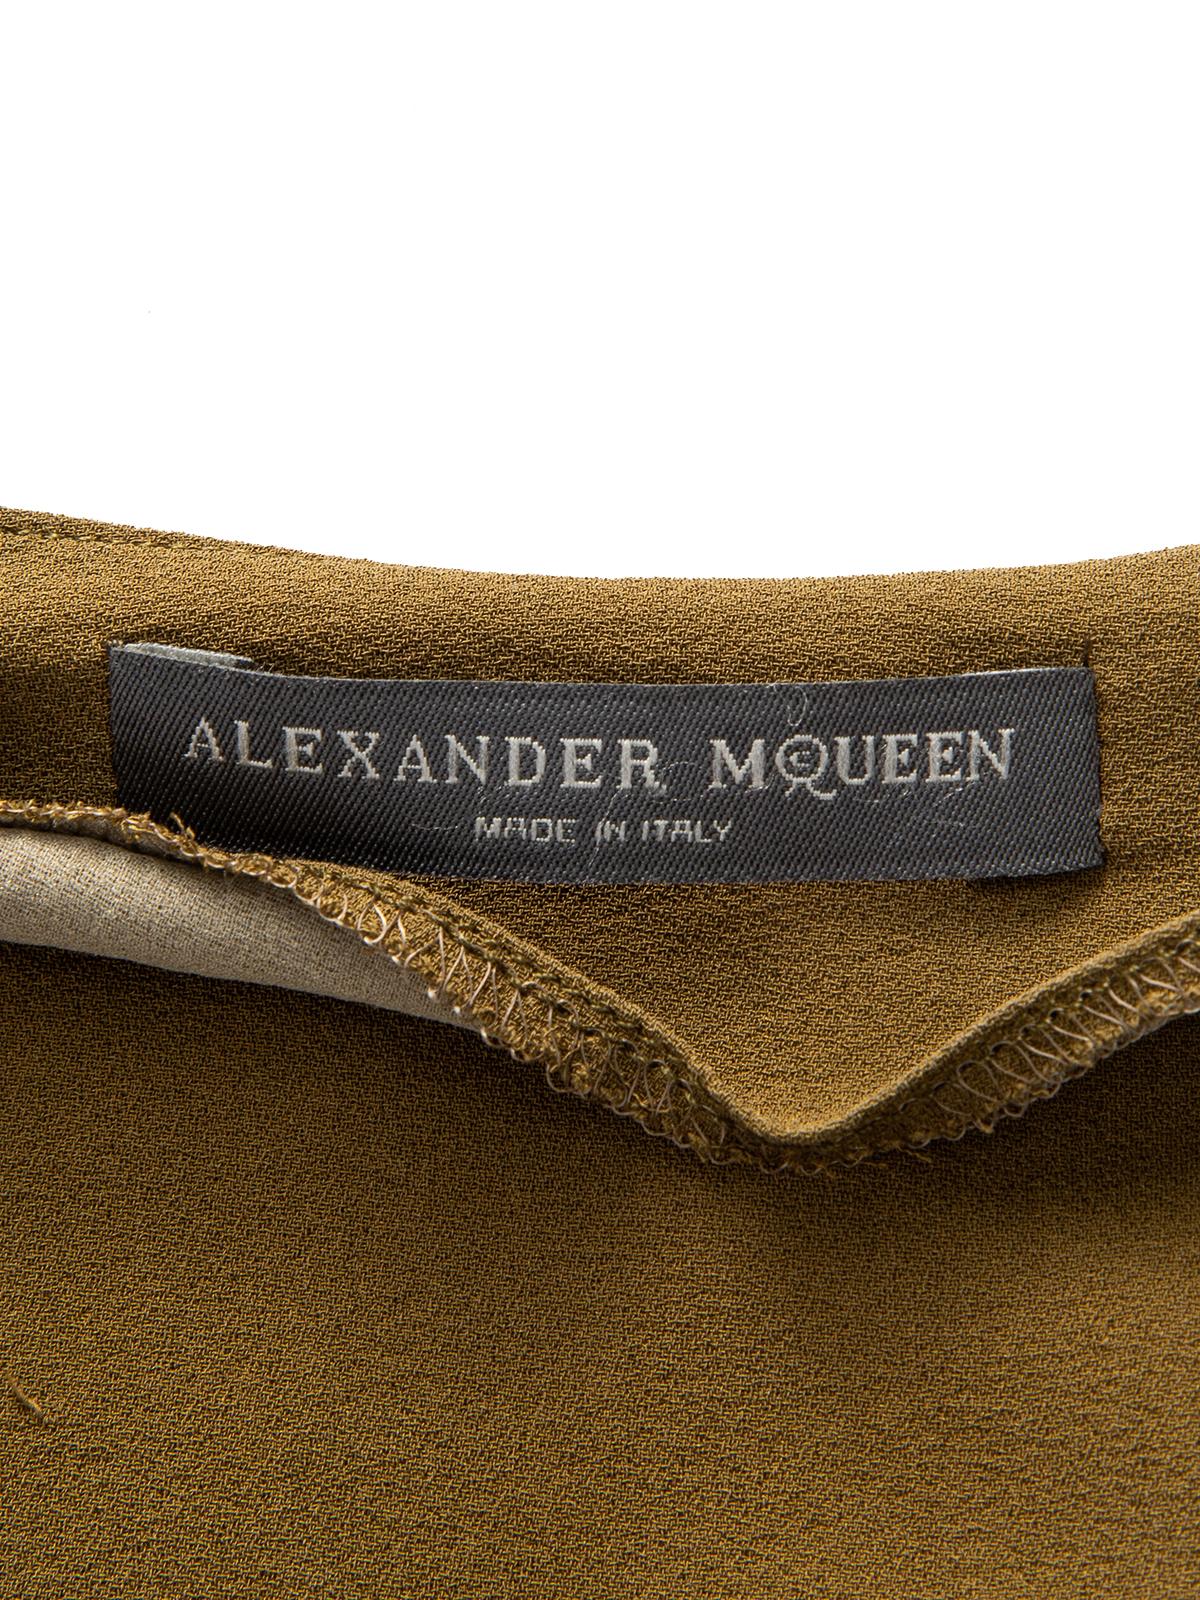 Pre-Loved Alexander McQueen Women's Flowy Blouse 2